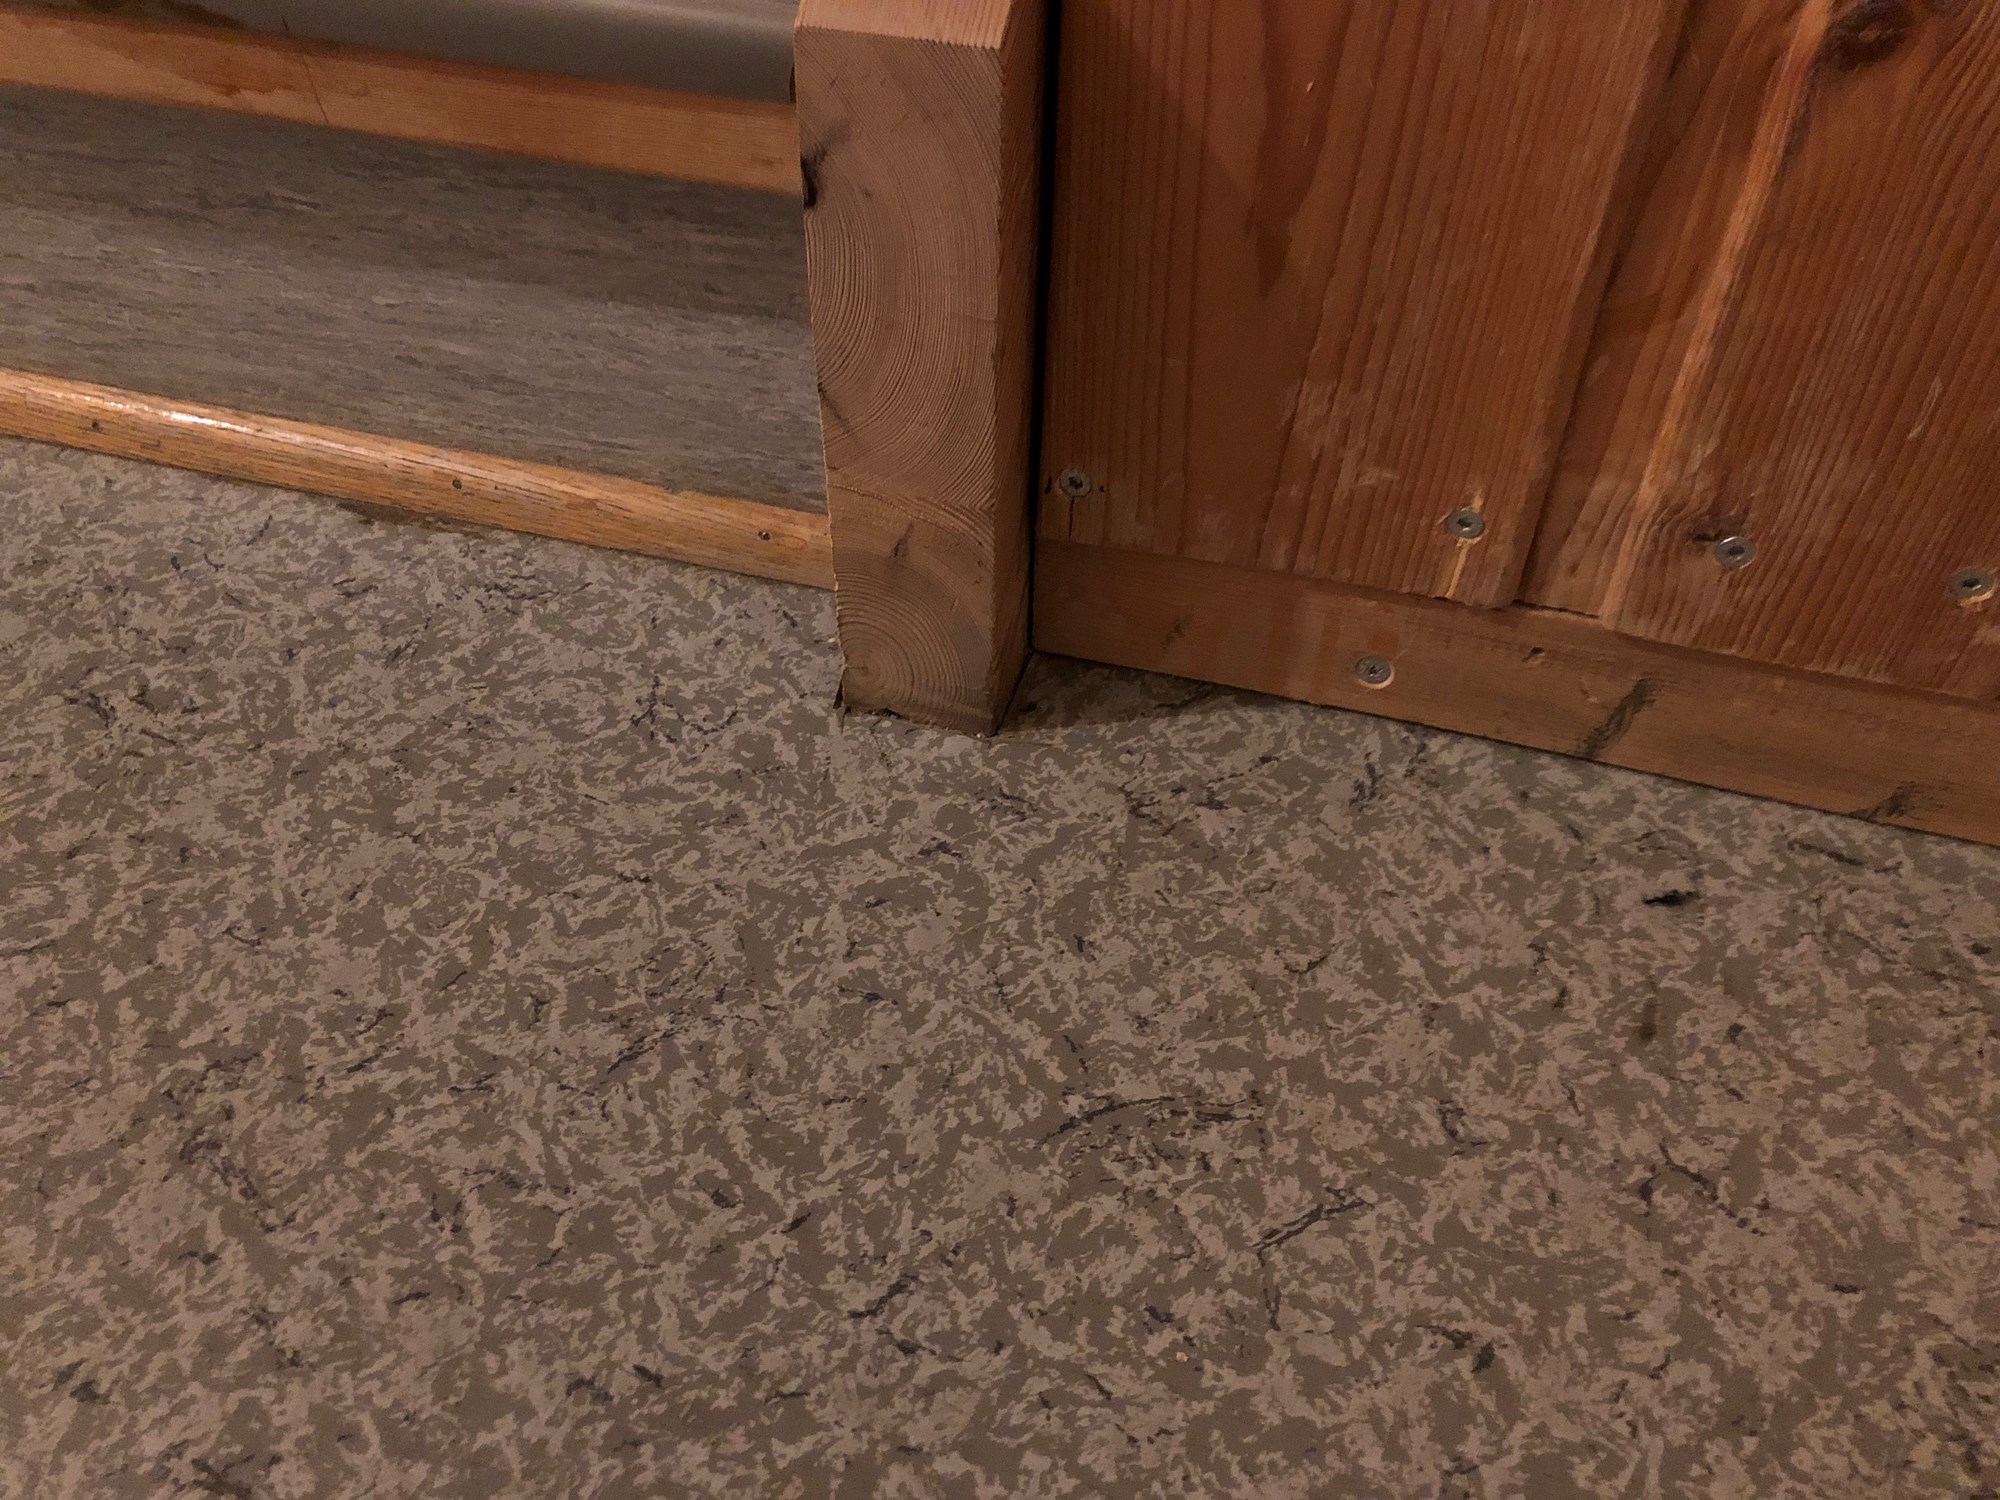 lyst til å friske opp noen av gulvene mine (gang/soverom), men hvordan få det pent? - 20181230_081145566_iOS.jpg - lekteren